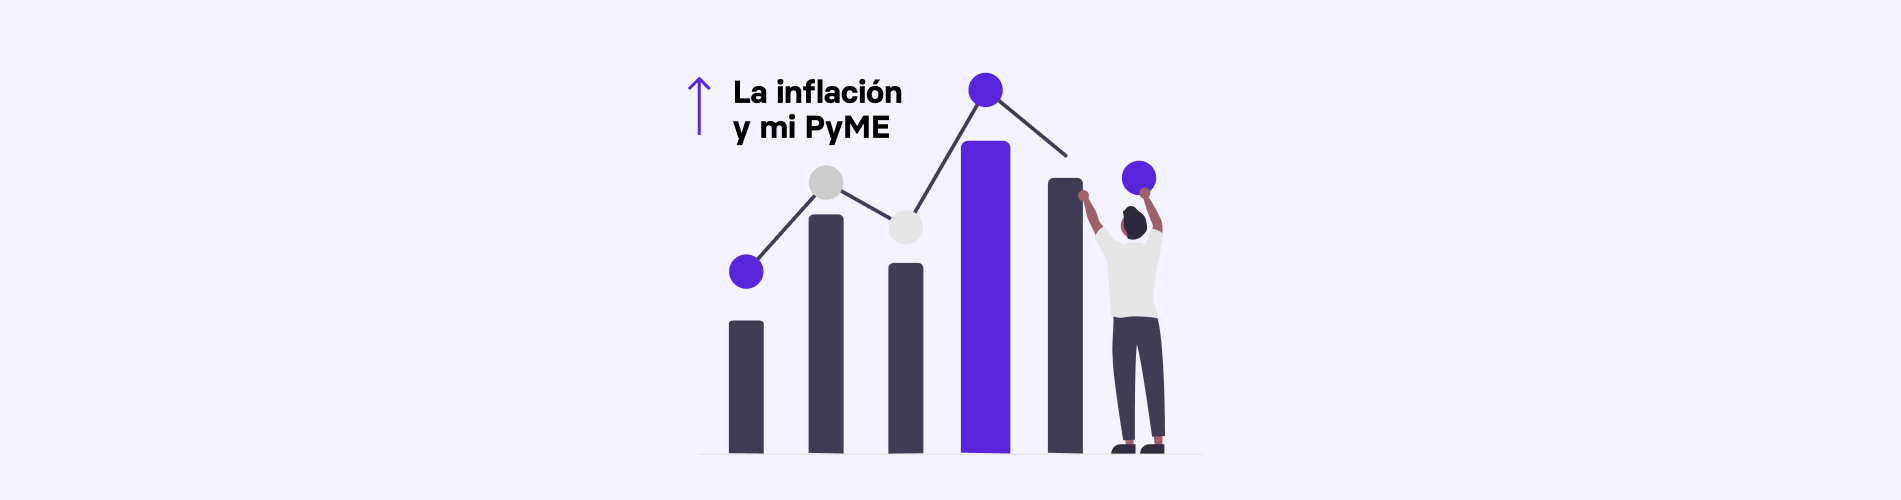 Inflación en Colombia: Cómo impacta sobre las PyMEs y qué medidas tomar